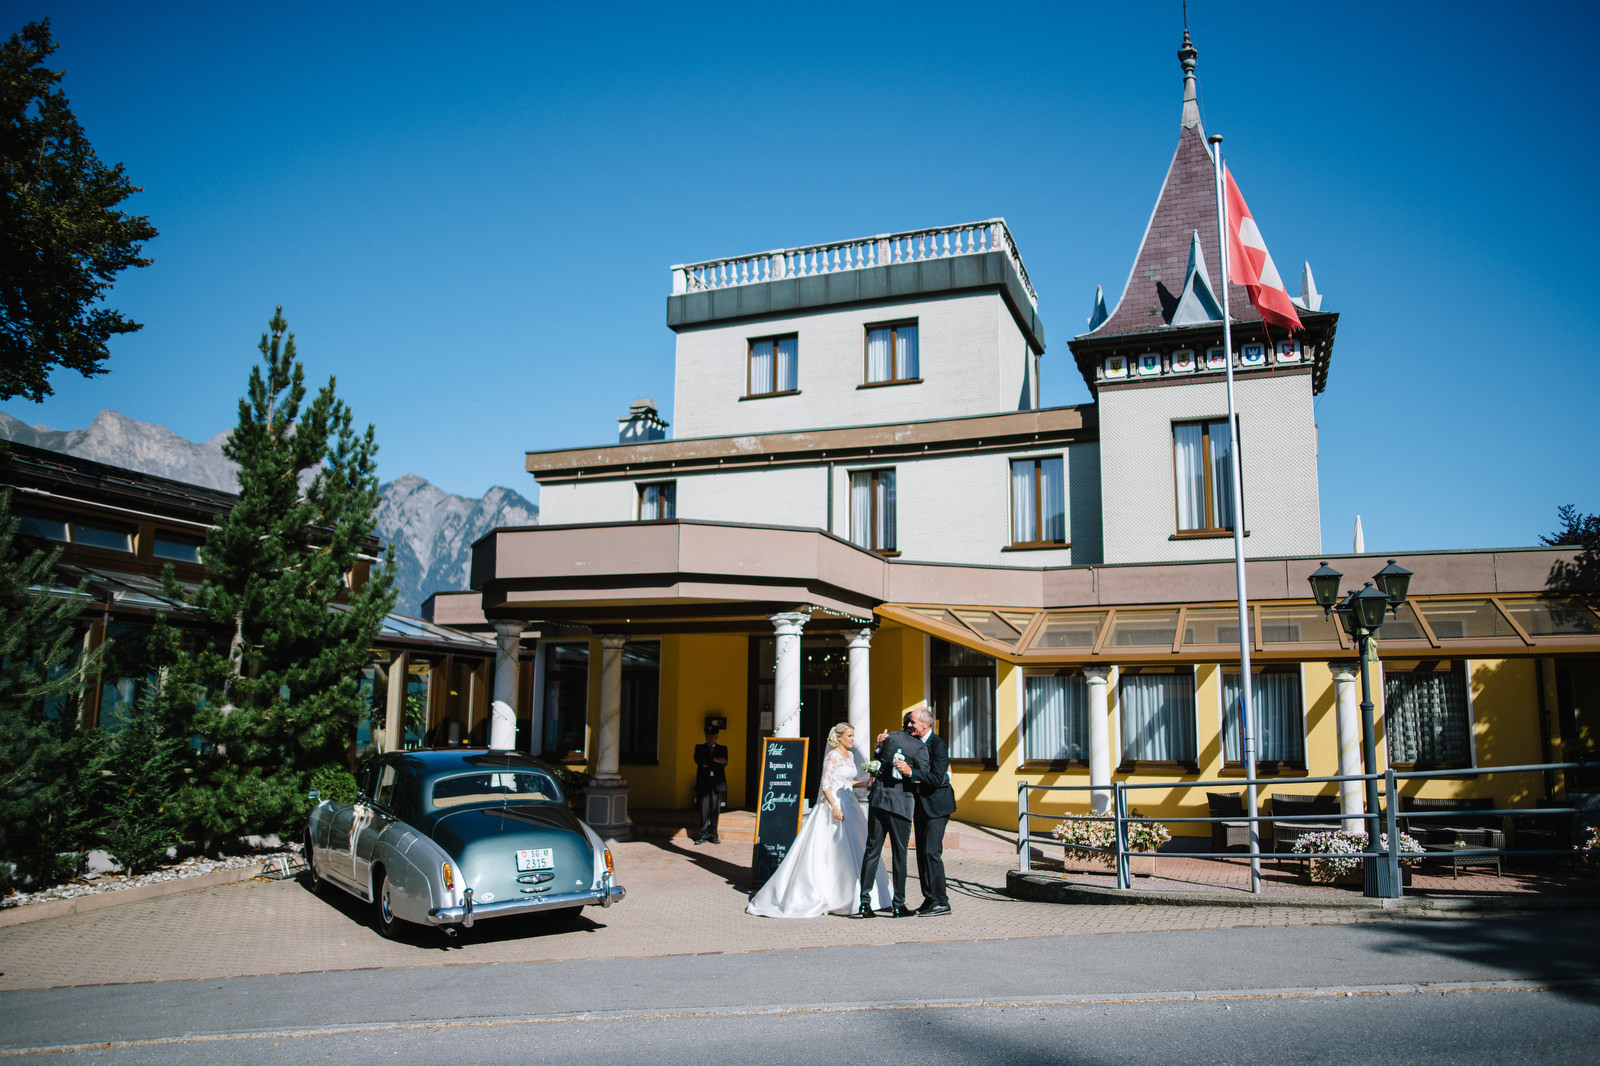 Fotograf Konstanz - Luxus Hochzeit Fotograf Grand Resort Bad Ragaz Schweiz Lichtenstein 104 - Hochzeit im Grand Resort Bad Ragaz, Schweiz  - 167 -